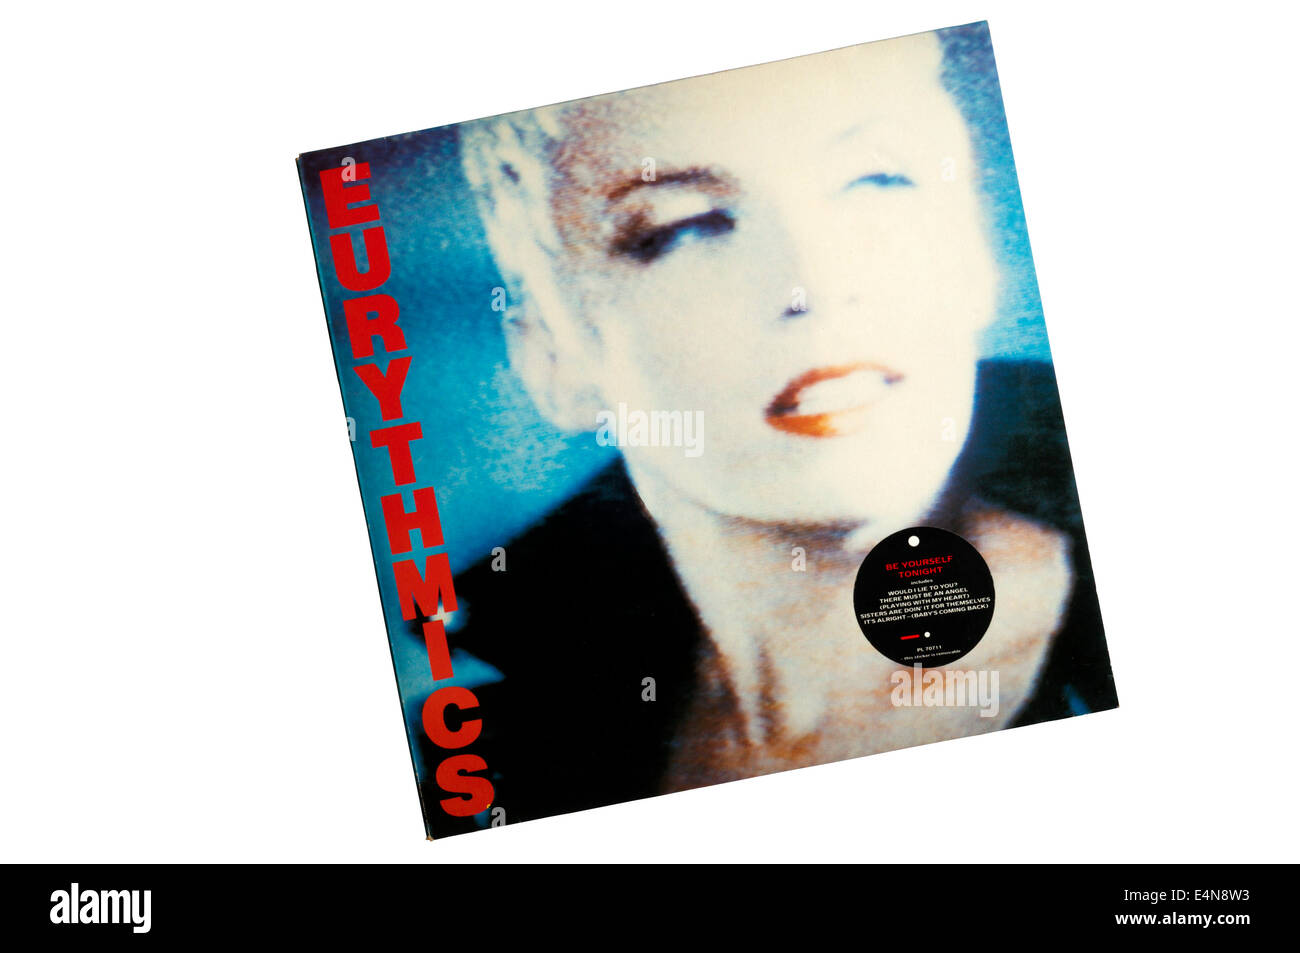 Sea usted mismo esta noche fue el cuarto álbum de estudio por el dúo pop británico Eurythmics, lanzado en 1985. Foto de stock